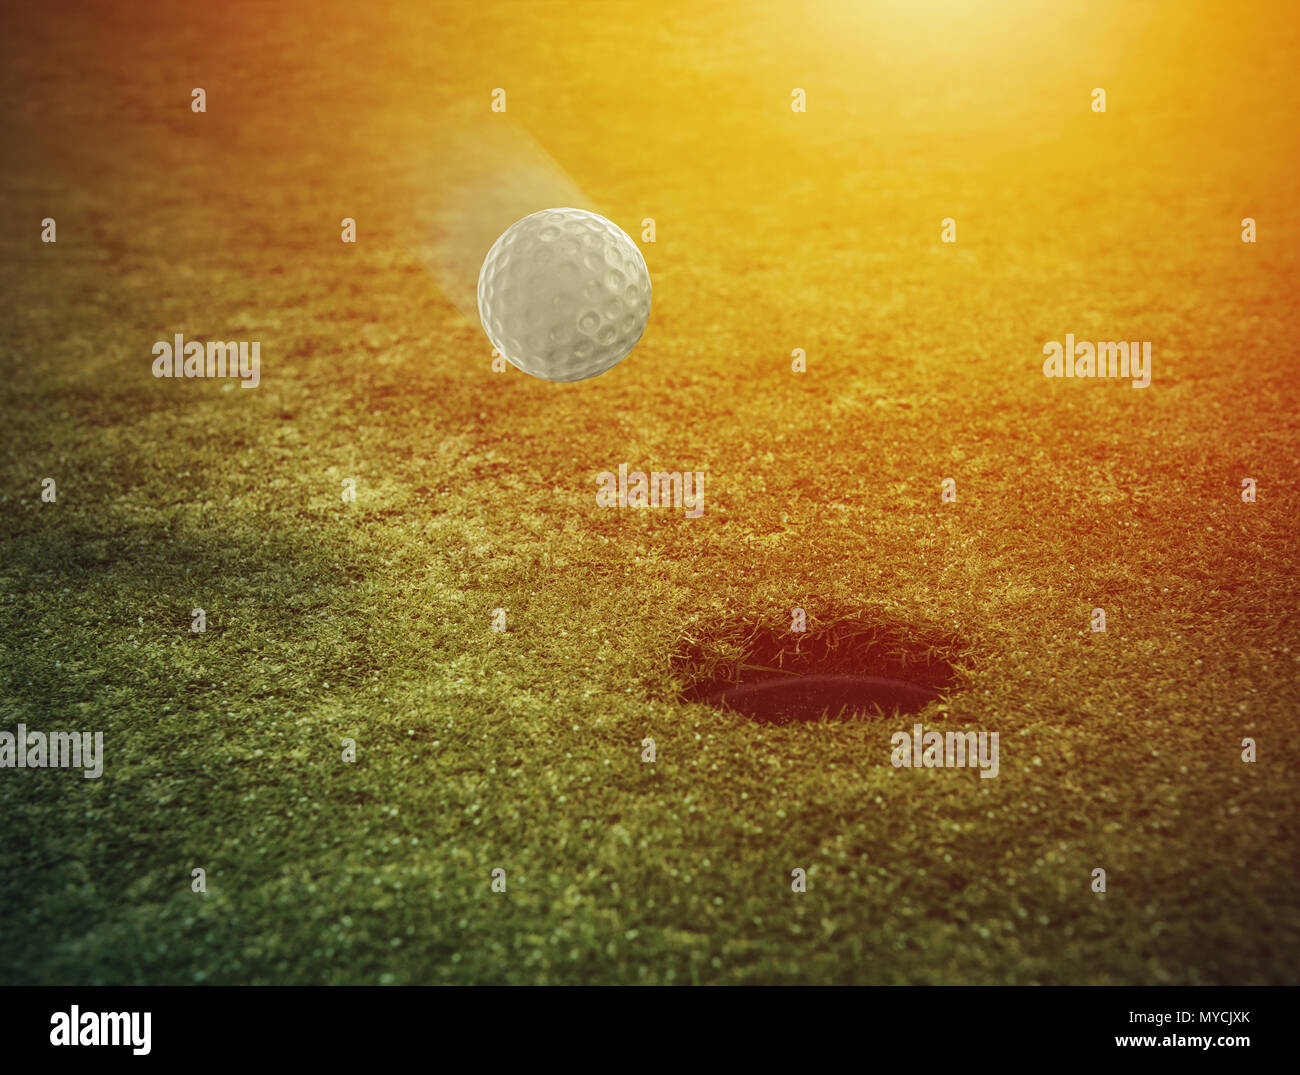 Balle de golf près du trou dans un champ d'herbe Banque D'Images